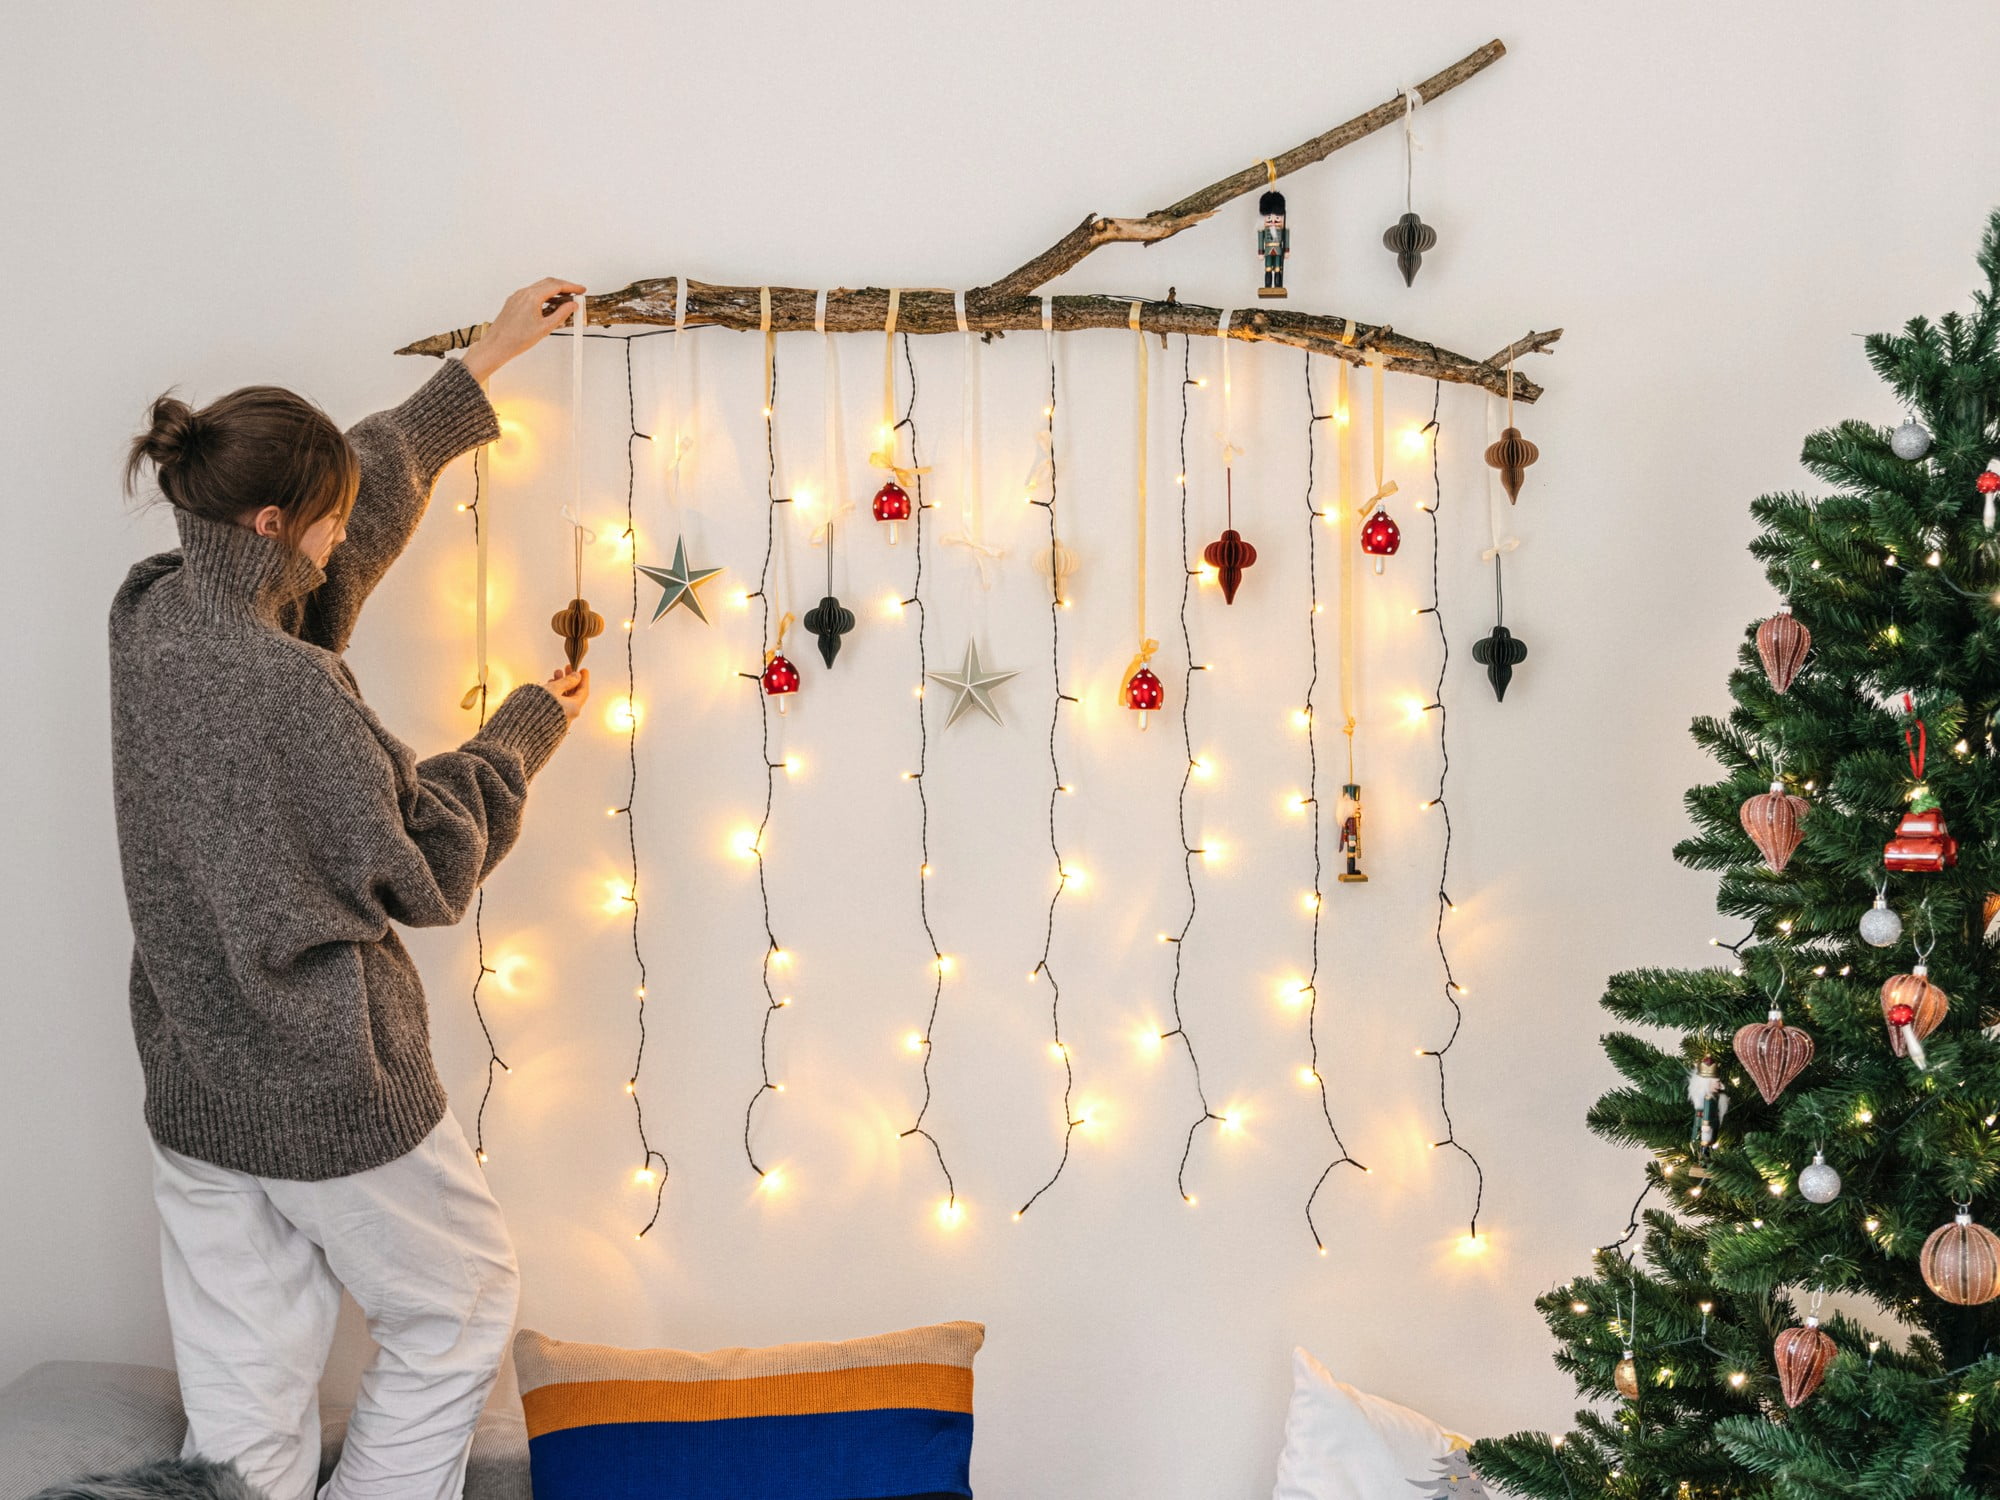 Ehhez a karácsonyi dekorációhoz mindössze egy ágra, néhány díszre és fényfüzérekre van szükséged.